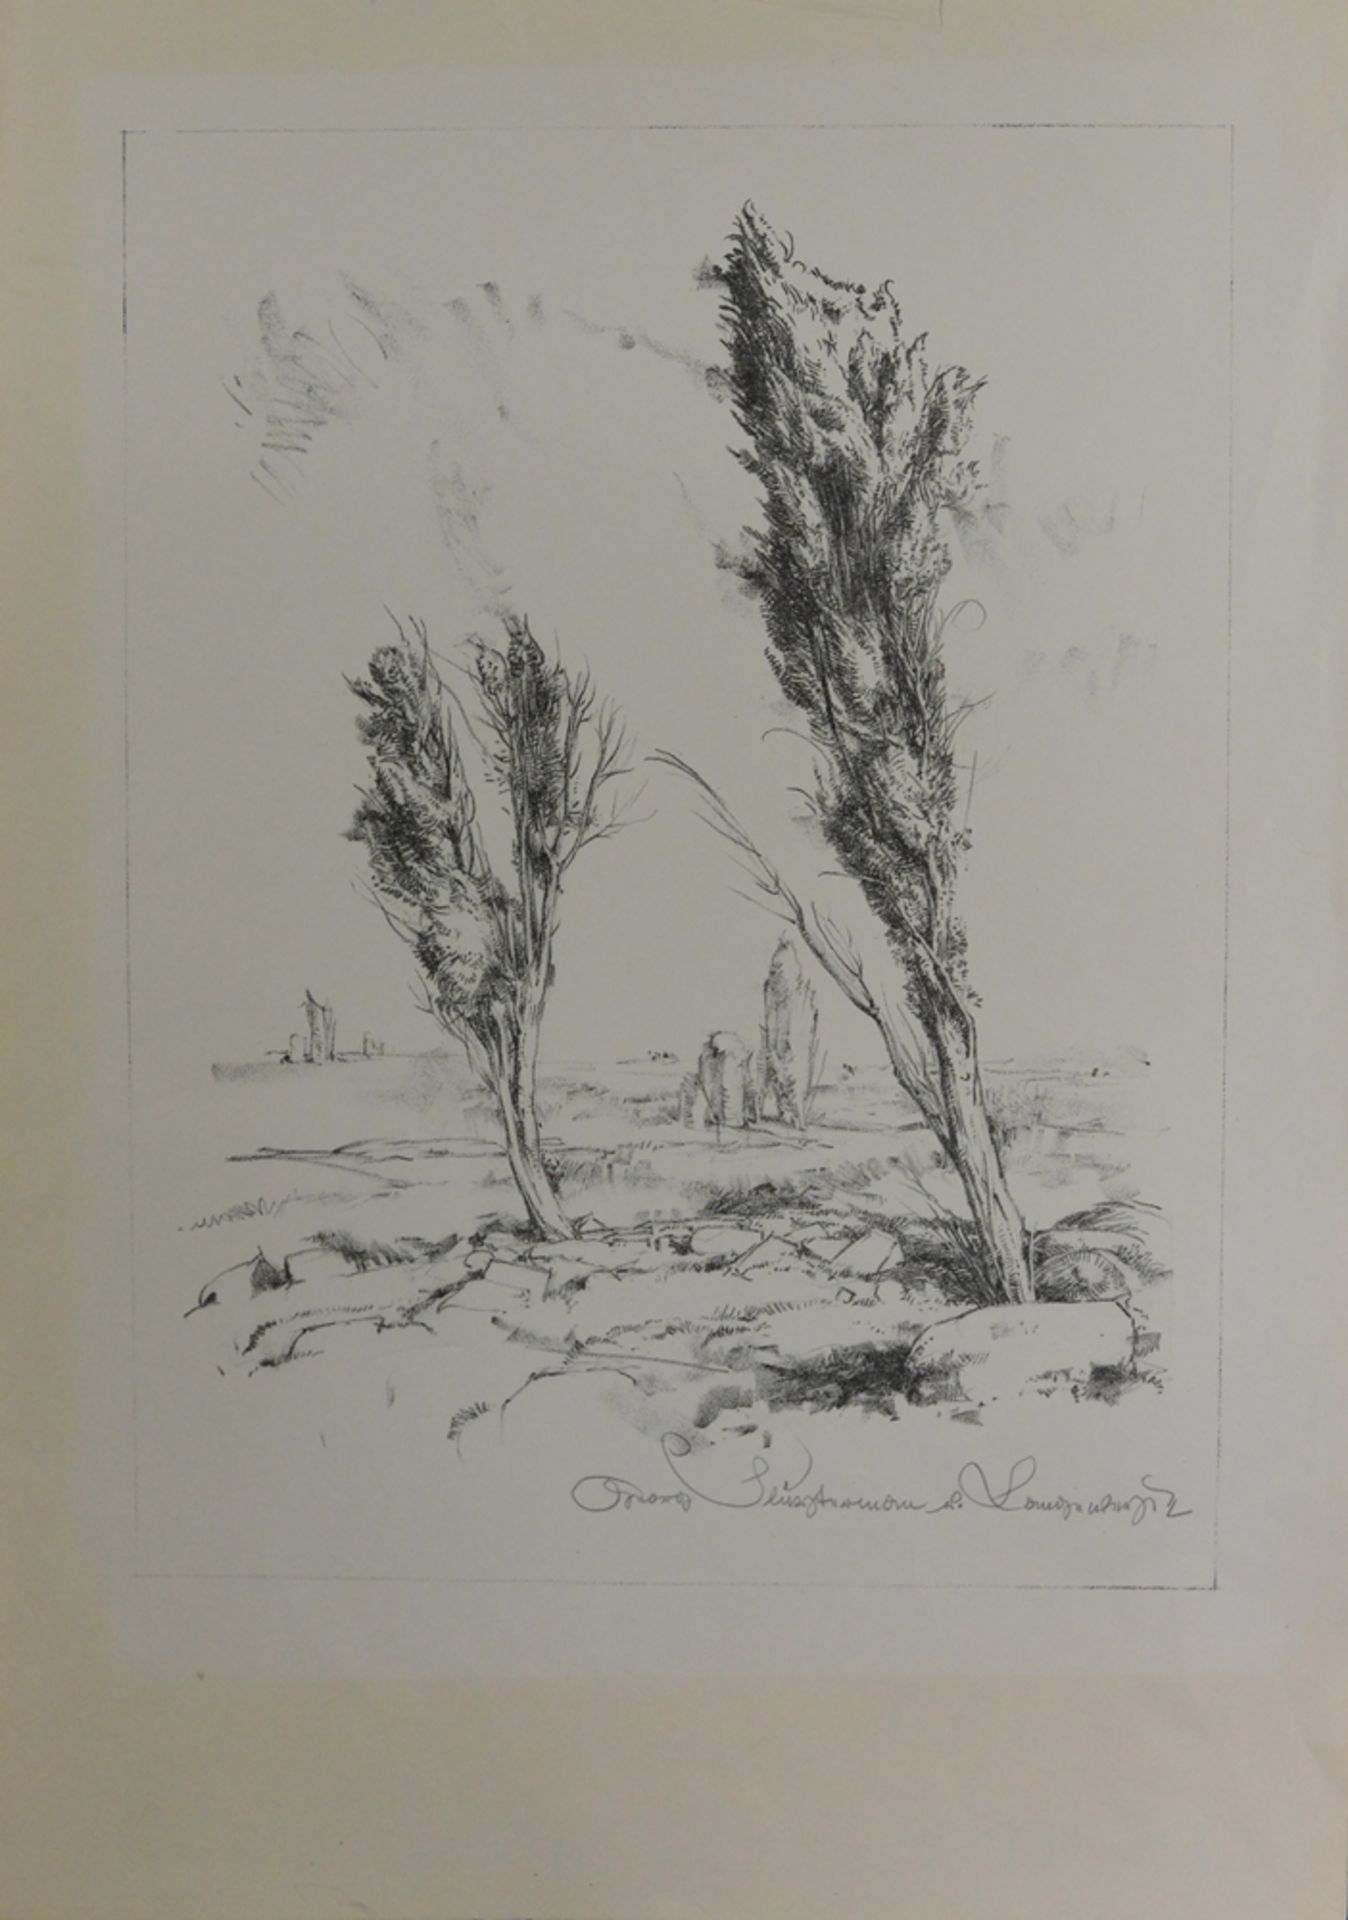 Unbekannt (20. Jahrhundert), "Moorlandschaft", Lithographie,